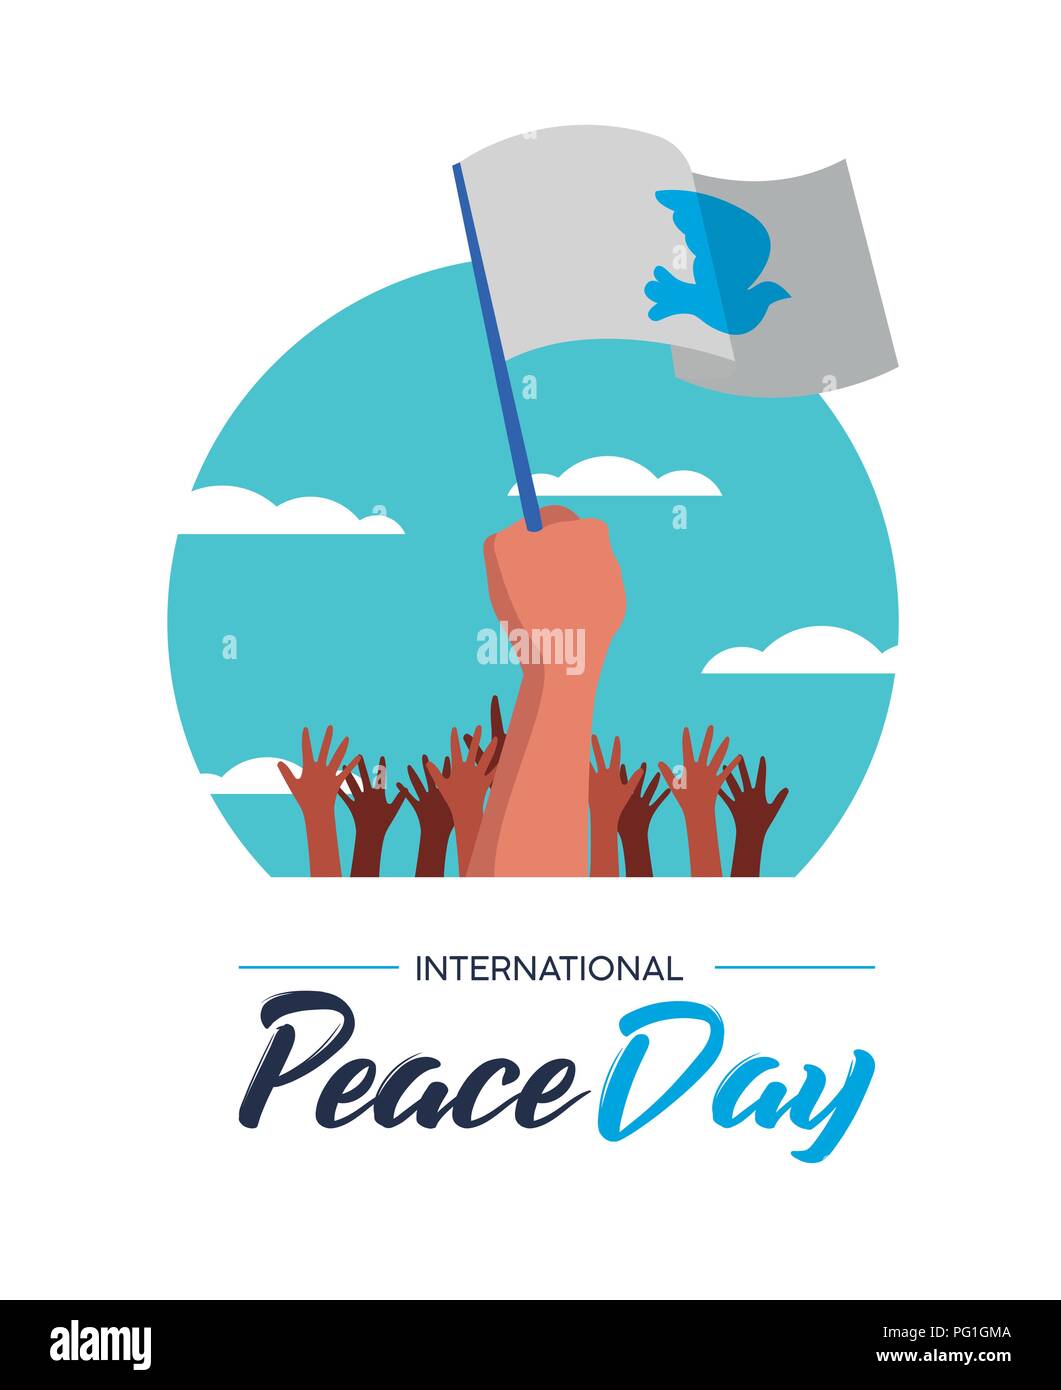 Internationaler Friedenstag Illustration, Welt Freiheit Feier für Jedermann. Gruppe von Menschen die Hände mit weißen Fahnen und Pigeon in speziellen pazifistische Ev Stock Vektor